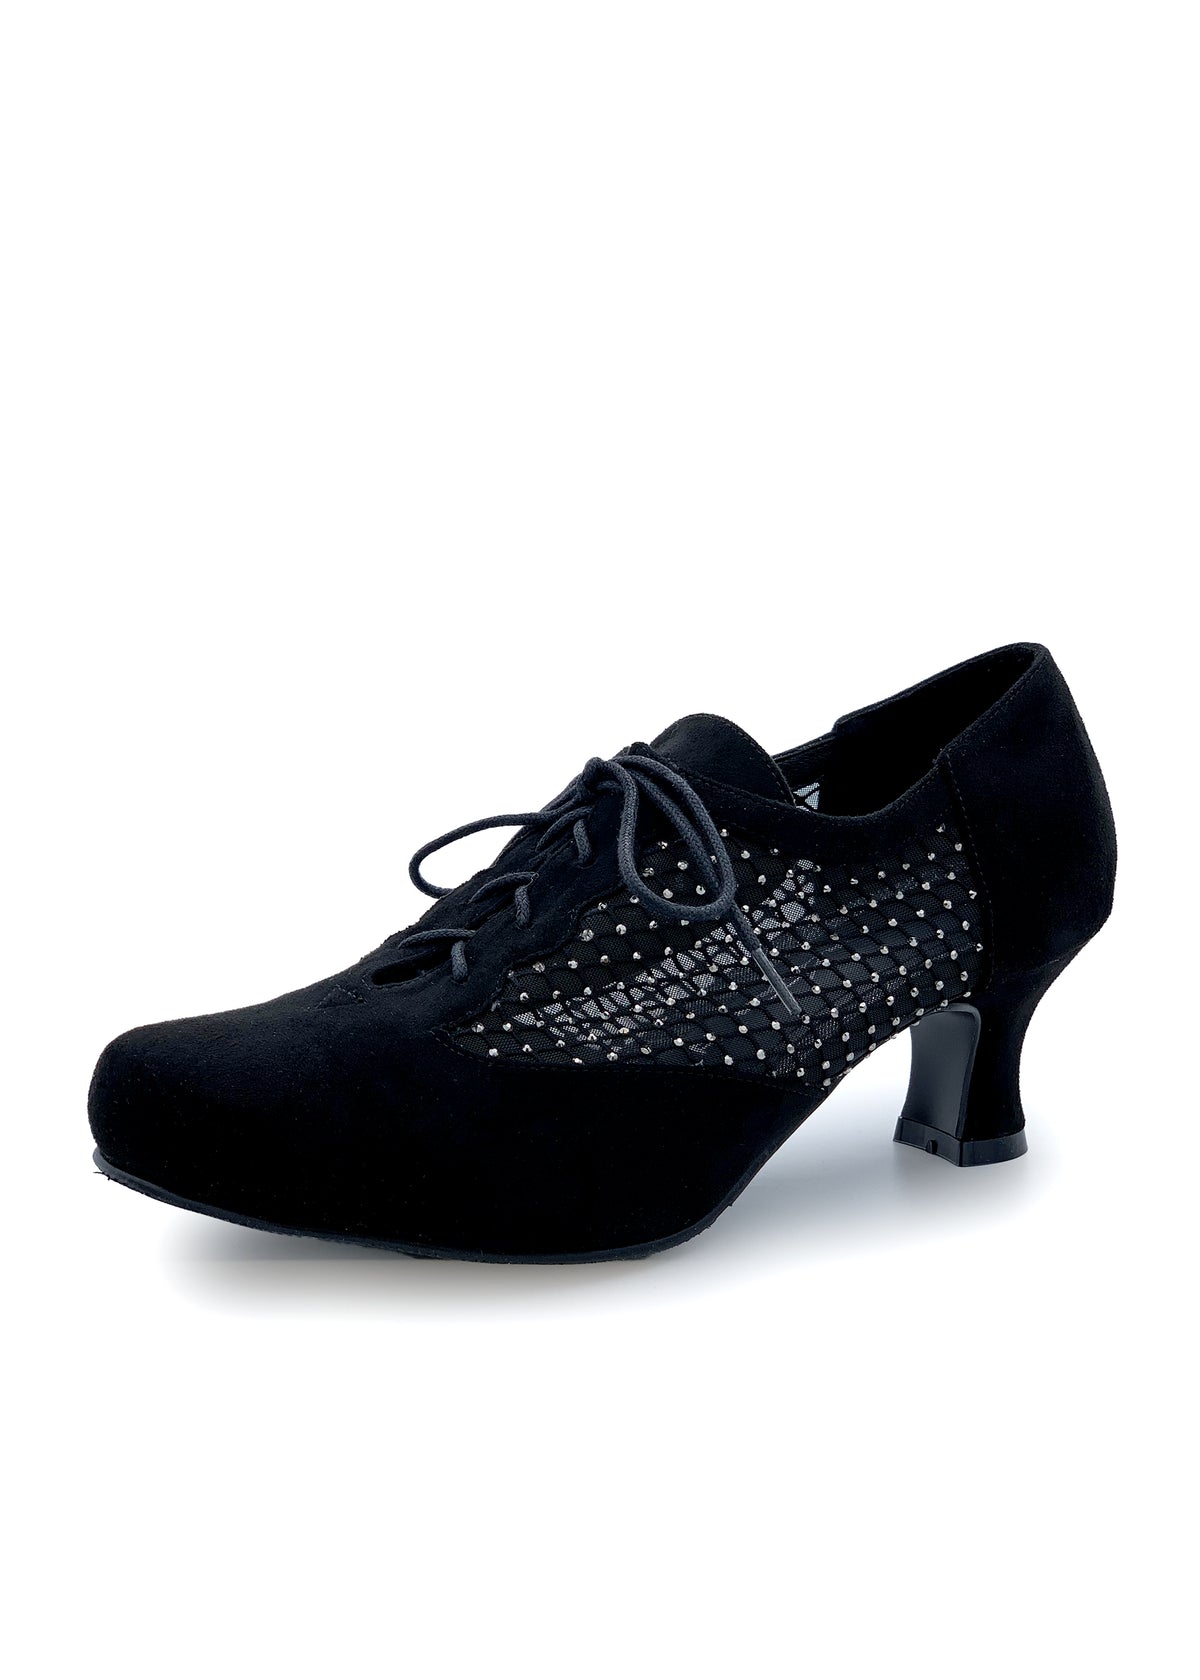 Party Walking skor - svart tyg, diamantnät på sidorna, bred spets